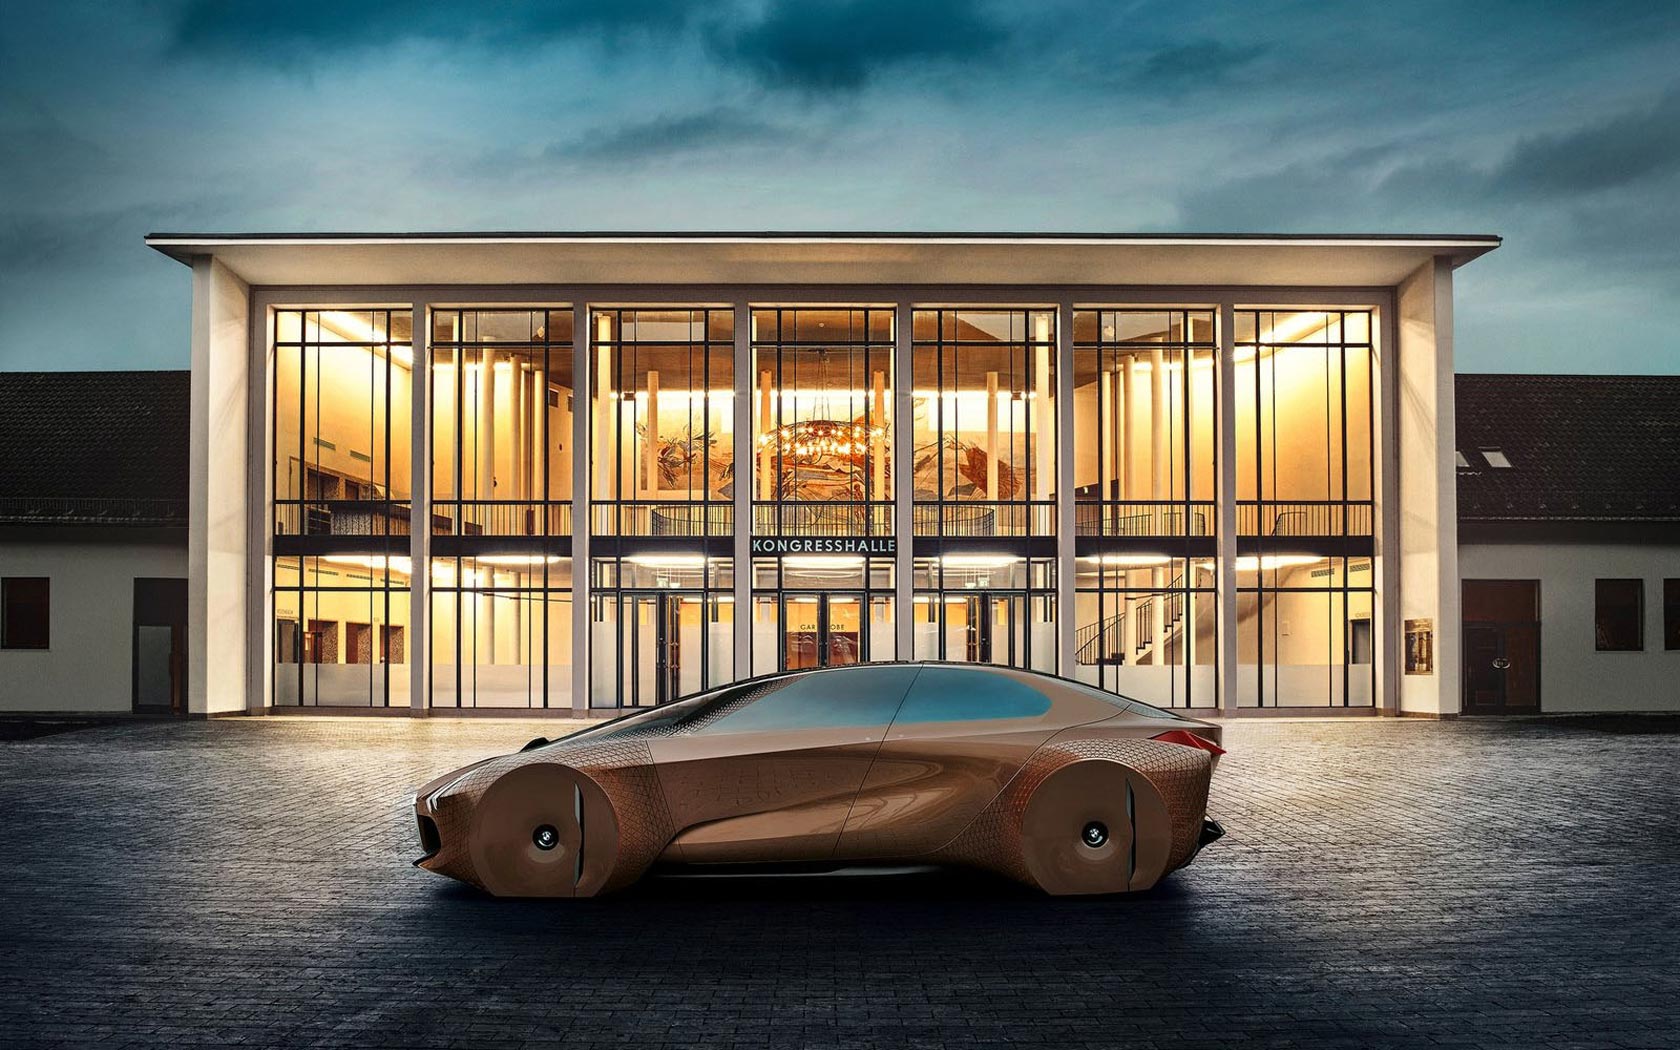  BMW Vision Next 100 Concept 